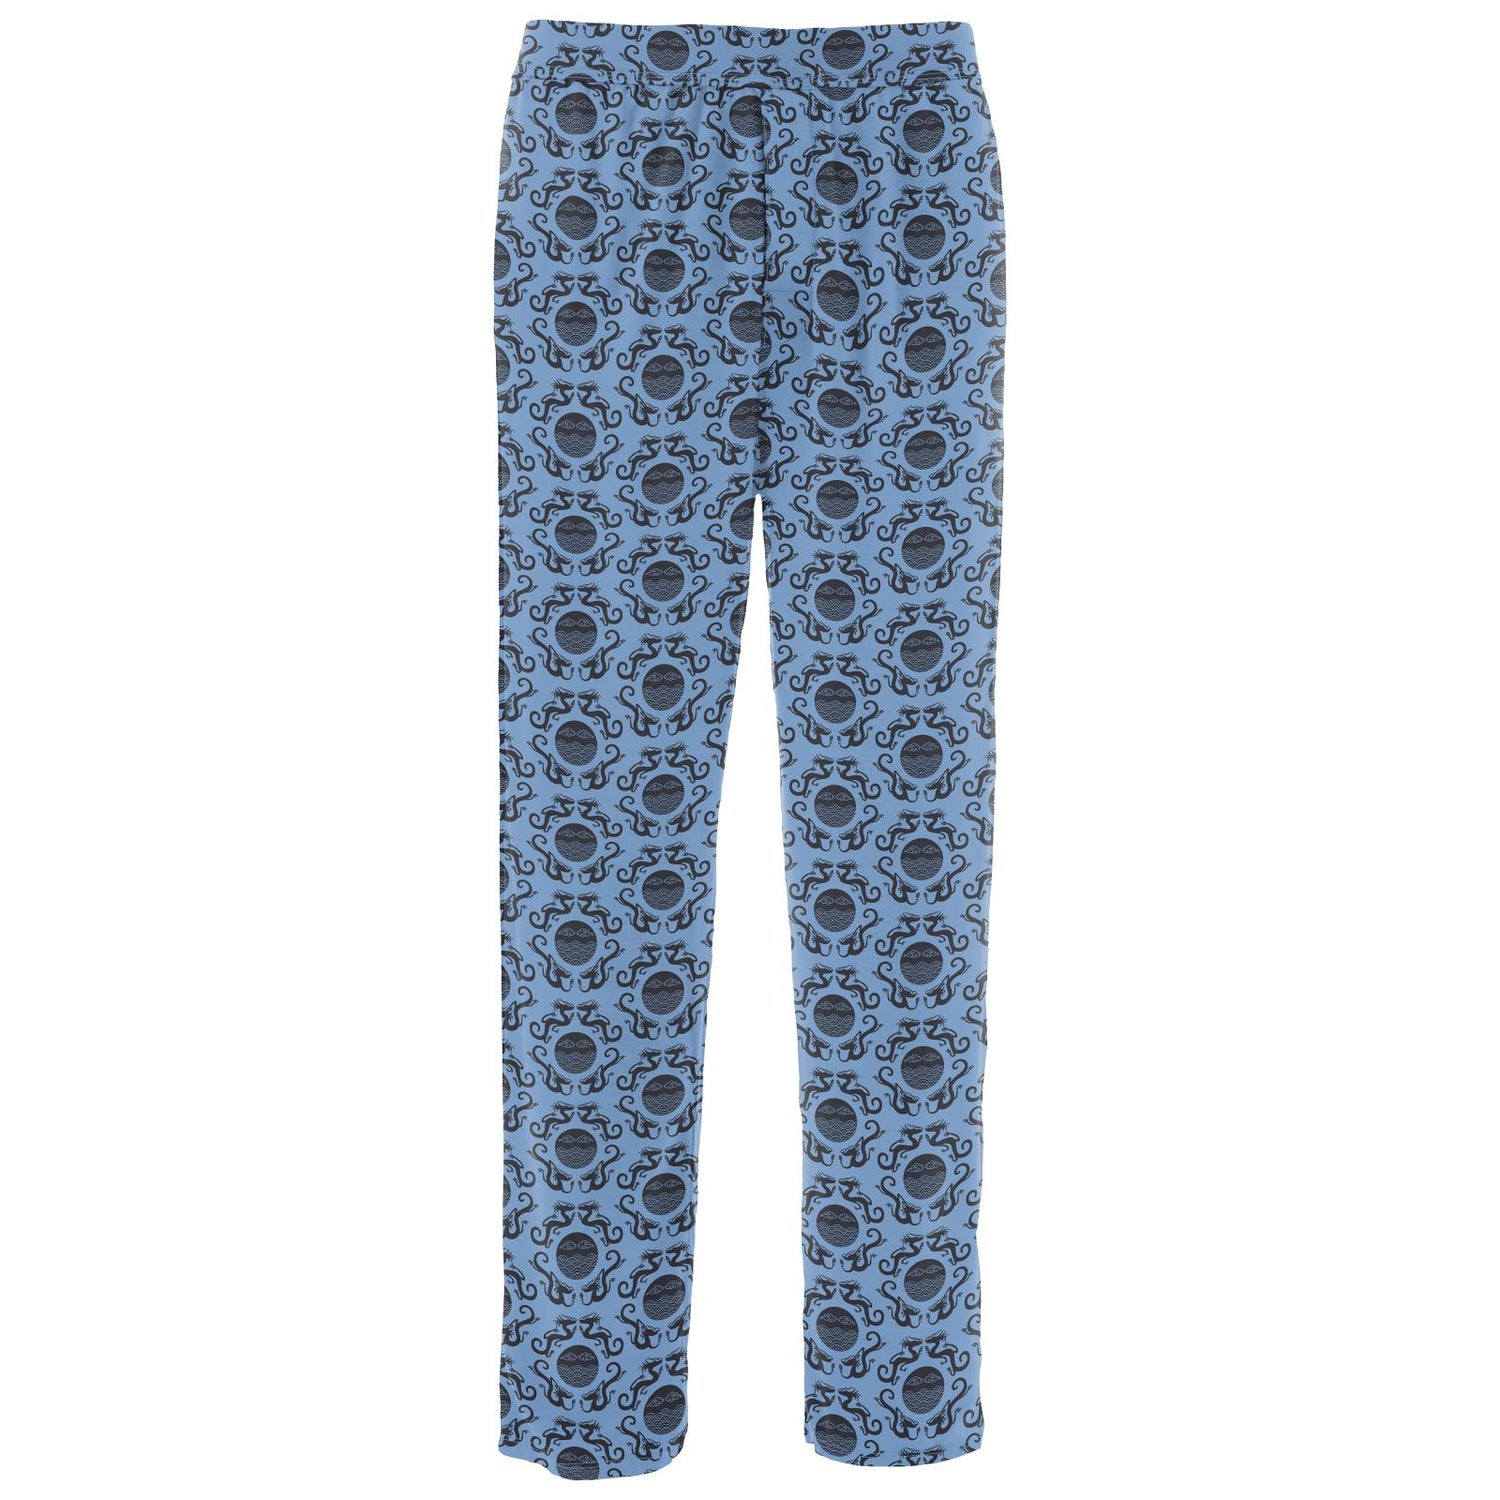 Men's Print Pajama Pants in Dream Blue Four Dragons